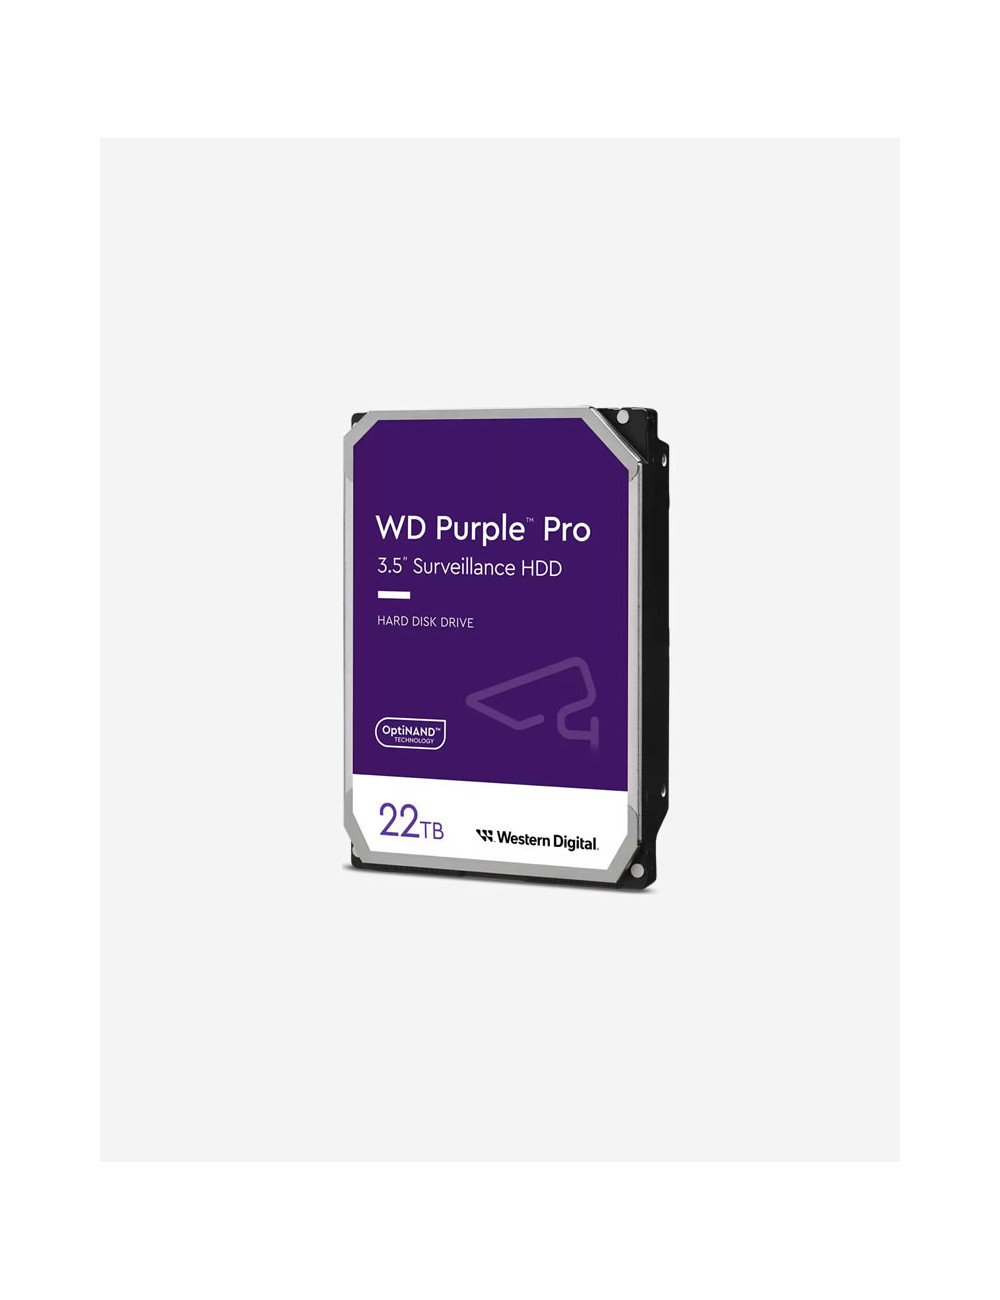 WD PURPLE PRO 22TB 3.5" HDD Drive